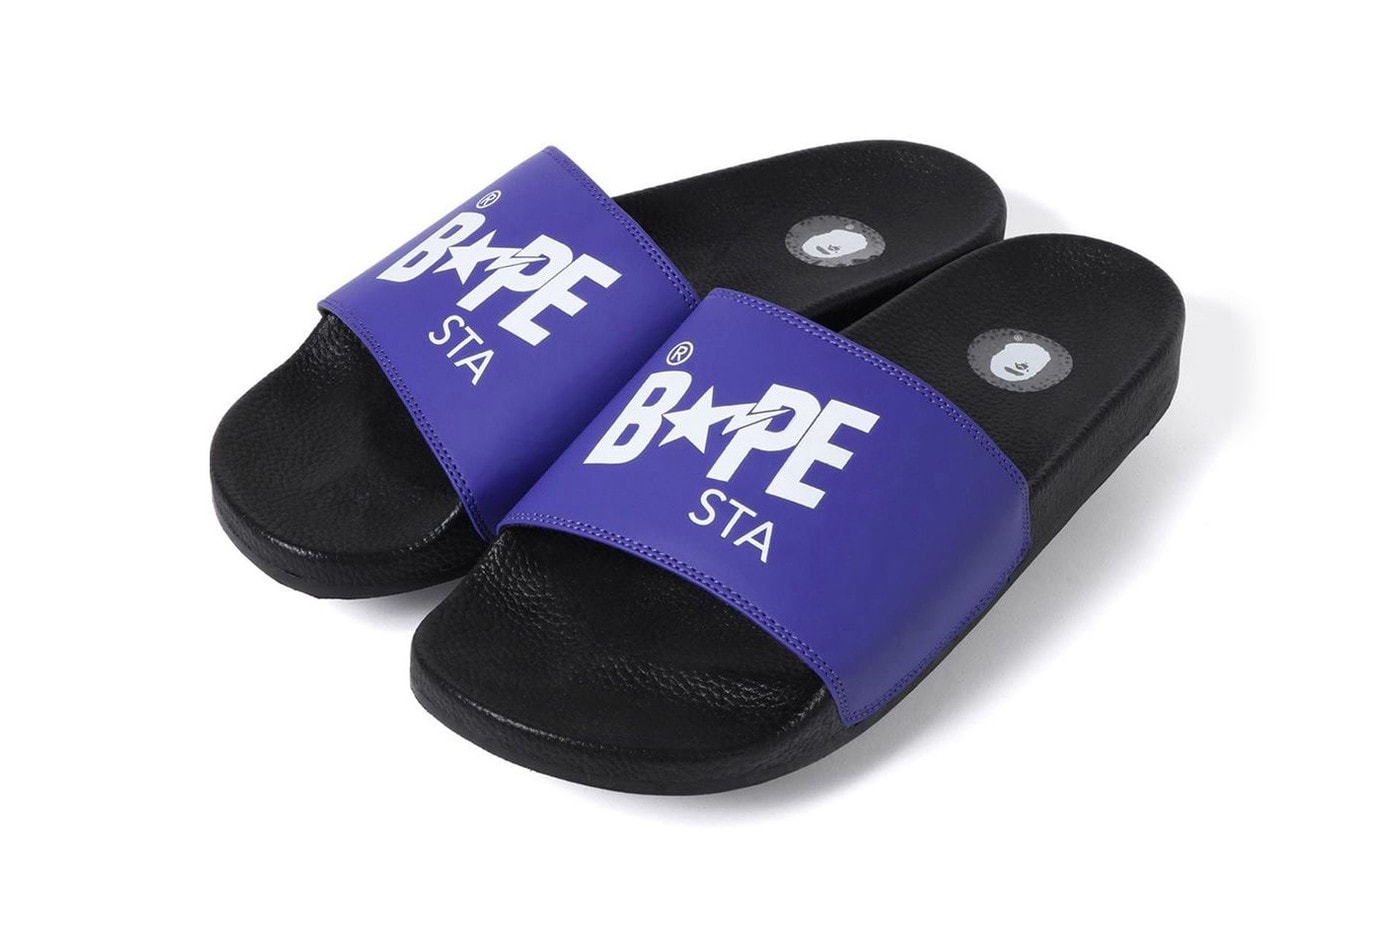 迎接夏季 − A BATHING APE® 全新 BAPESTA 樣式拖鞋發佈